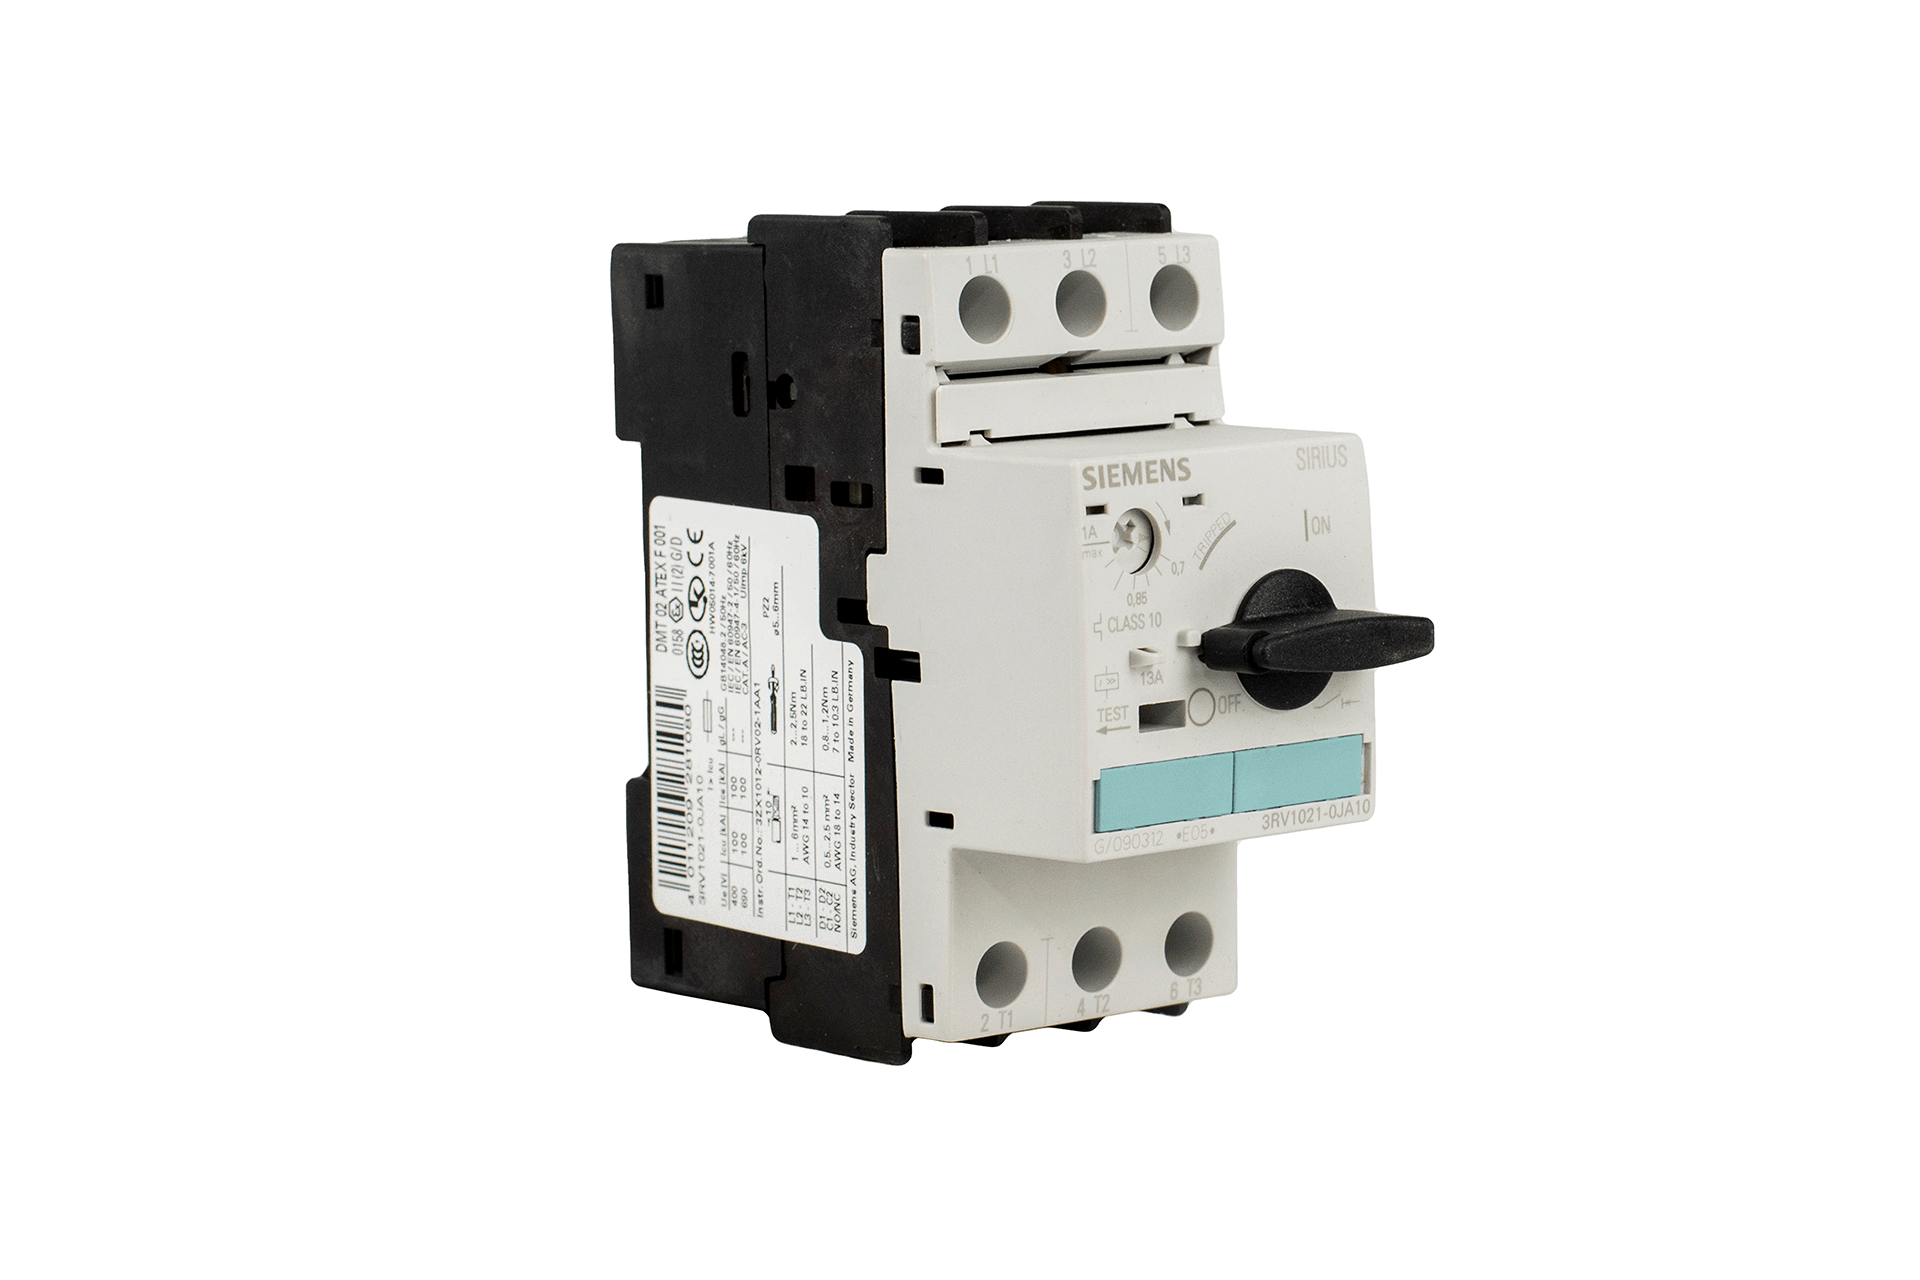 siemens 1-10 amps manual motor starter protections 3RV1021-1JA10   G/040426.E05 